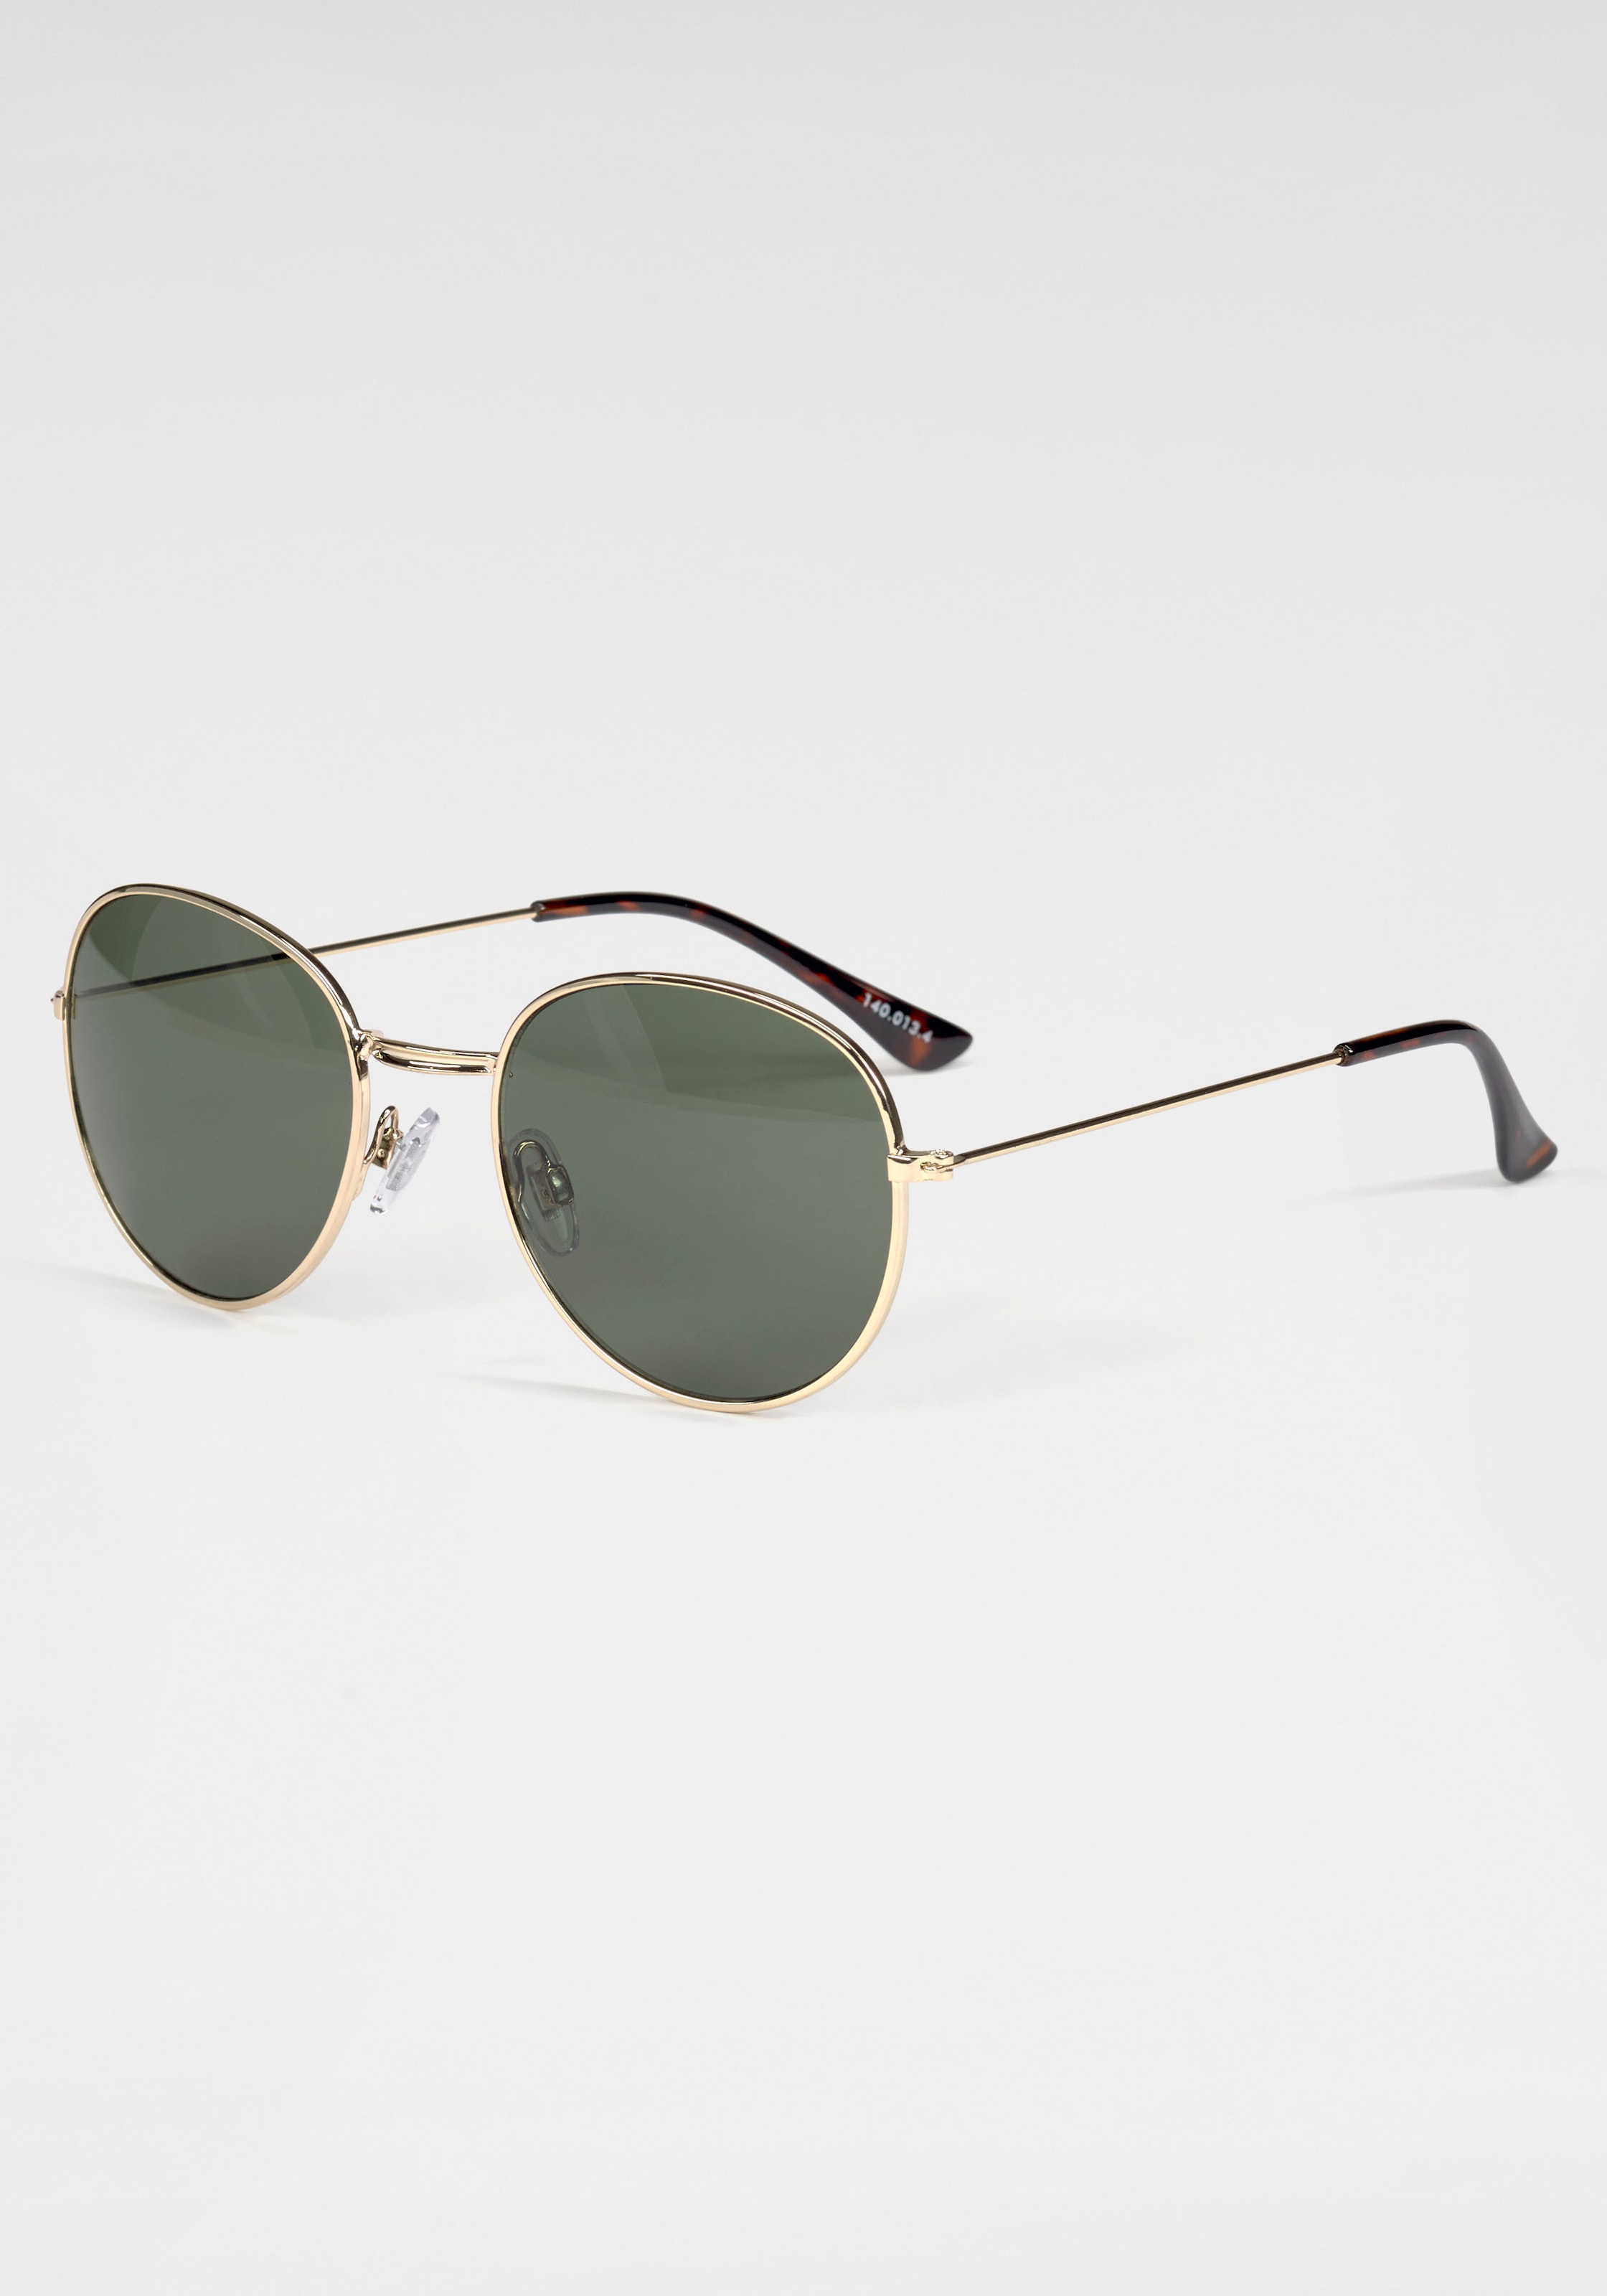 Sonnenbrille, Klassische runde Metall-Sonnenbrille in goldfarben